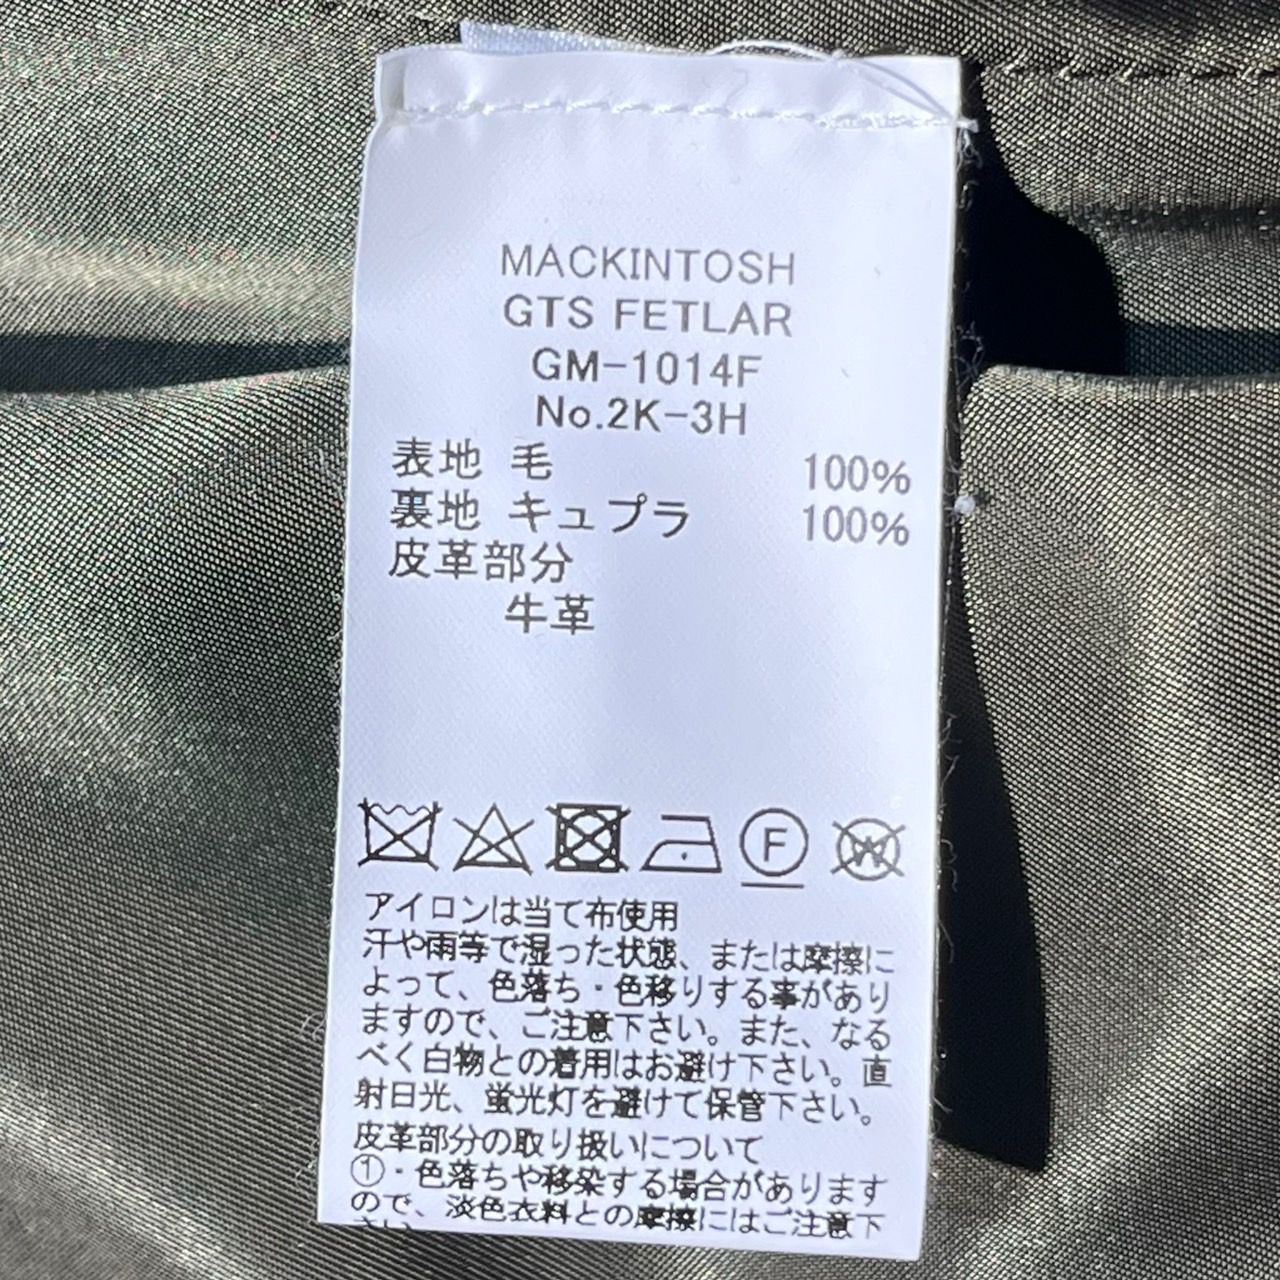 MACKINTOSH(マッキントッシュ) メルトンショートトレンチコート/FETLAR ...